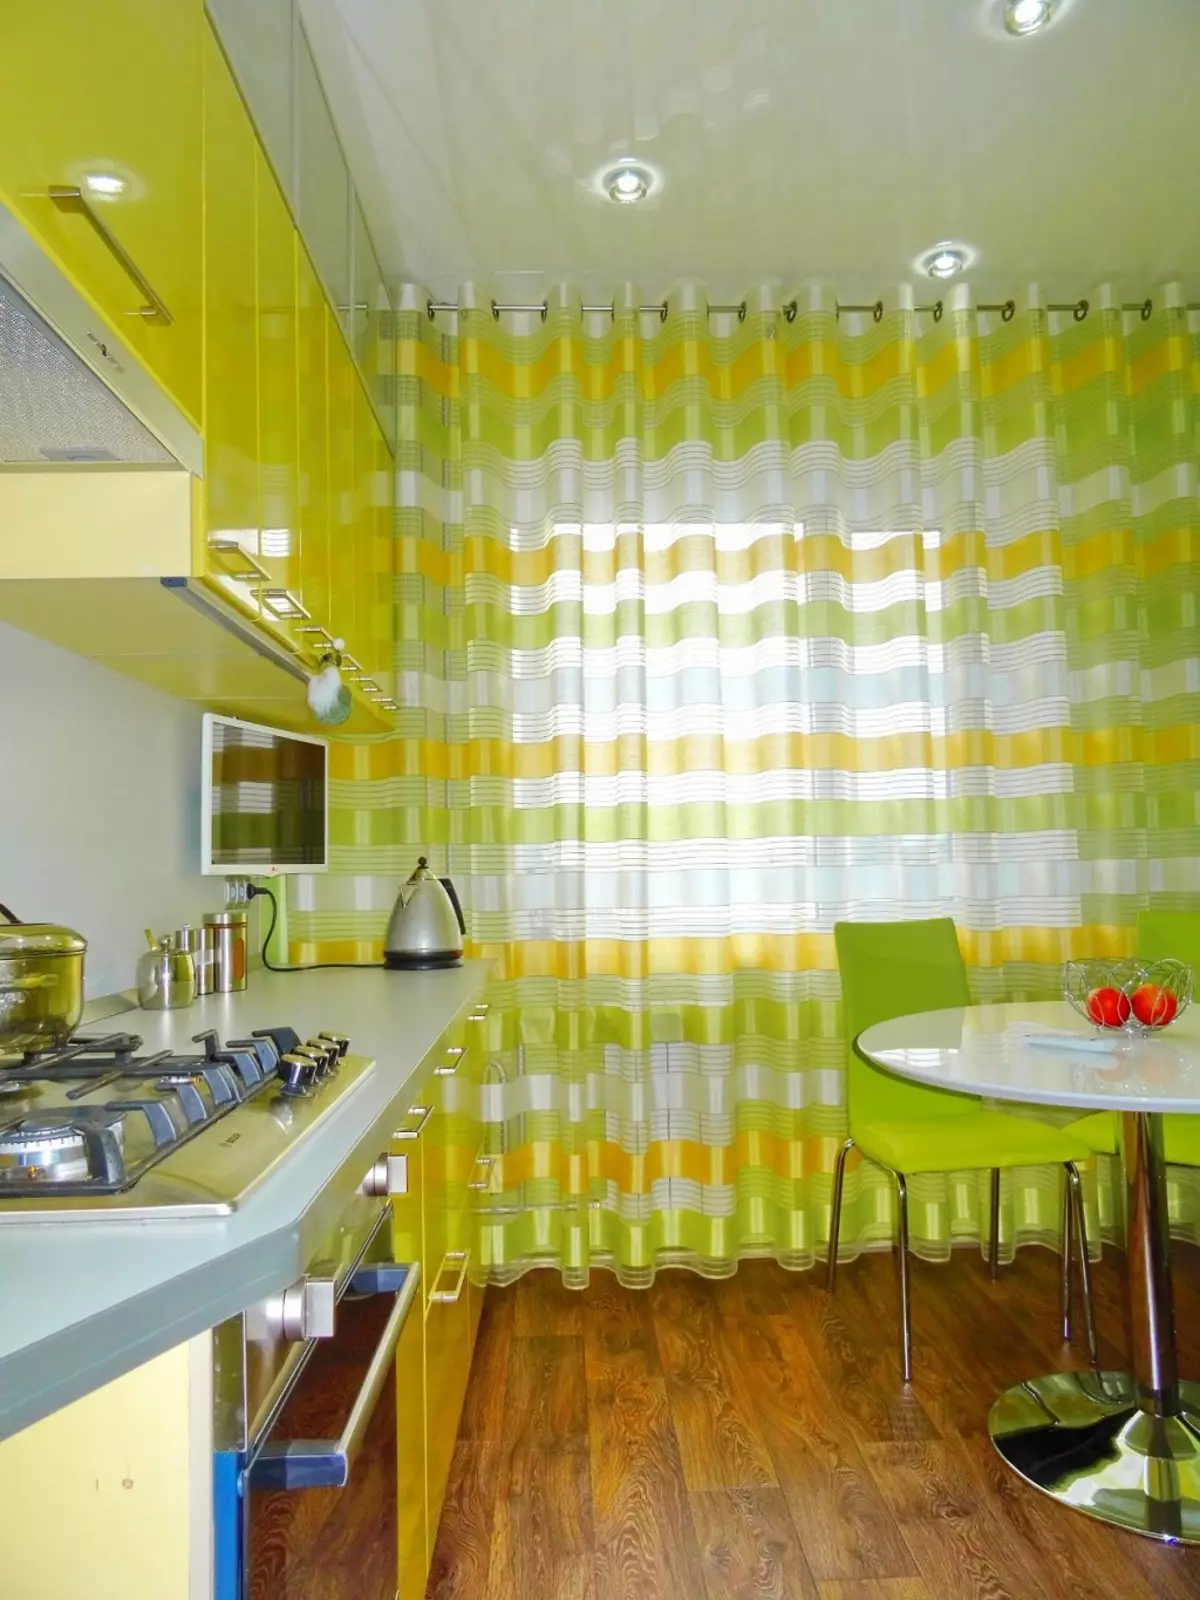 الستائر الخضراء في المطبخ (77 صور): البيج-سلطة والفستق ألوان الستائر لالمطبخ الأبيض والبرتقالي، والديكورات الداخلية مع تول أخضر أرجواني 20973_17